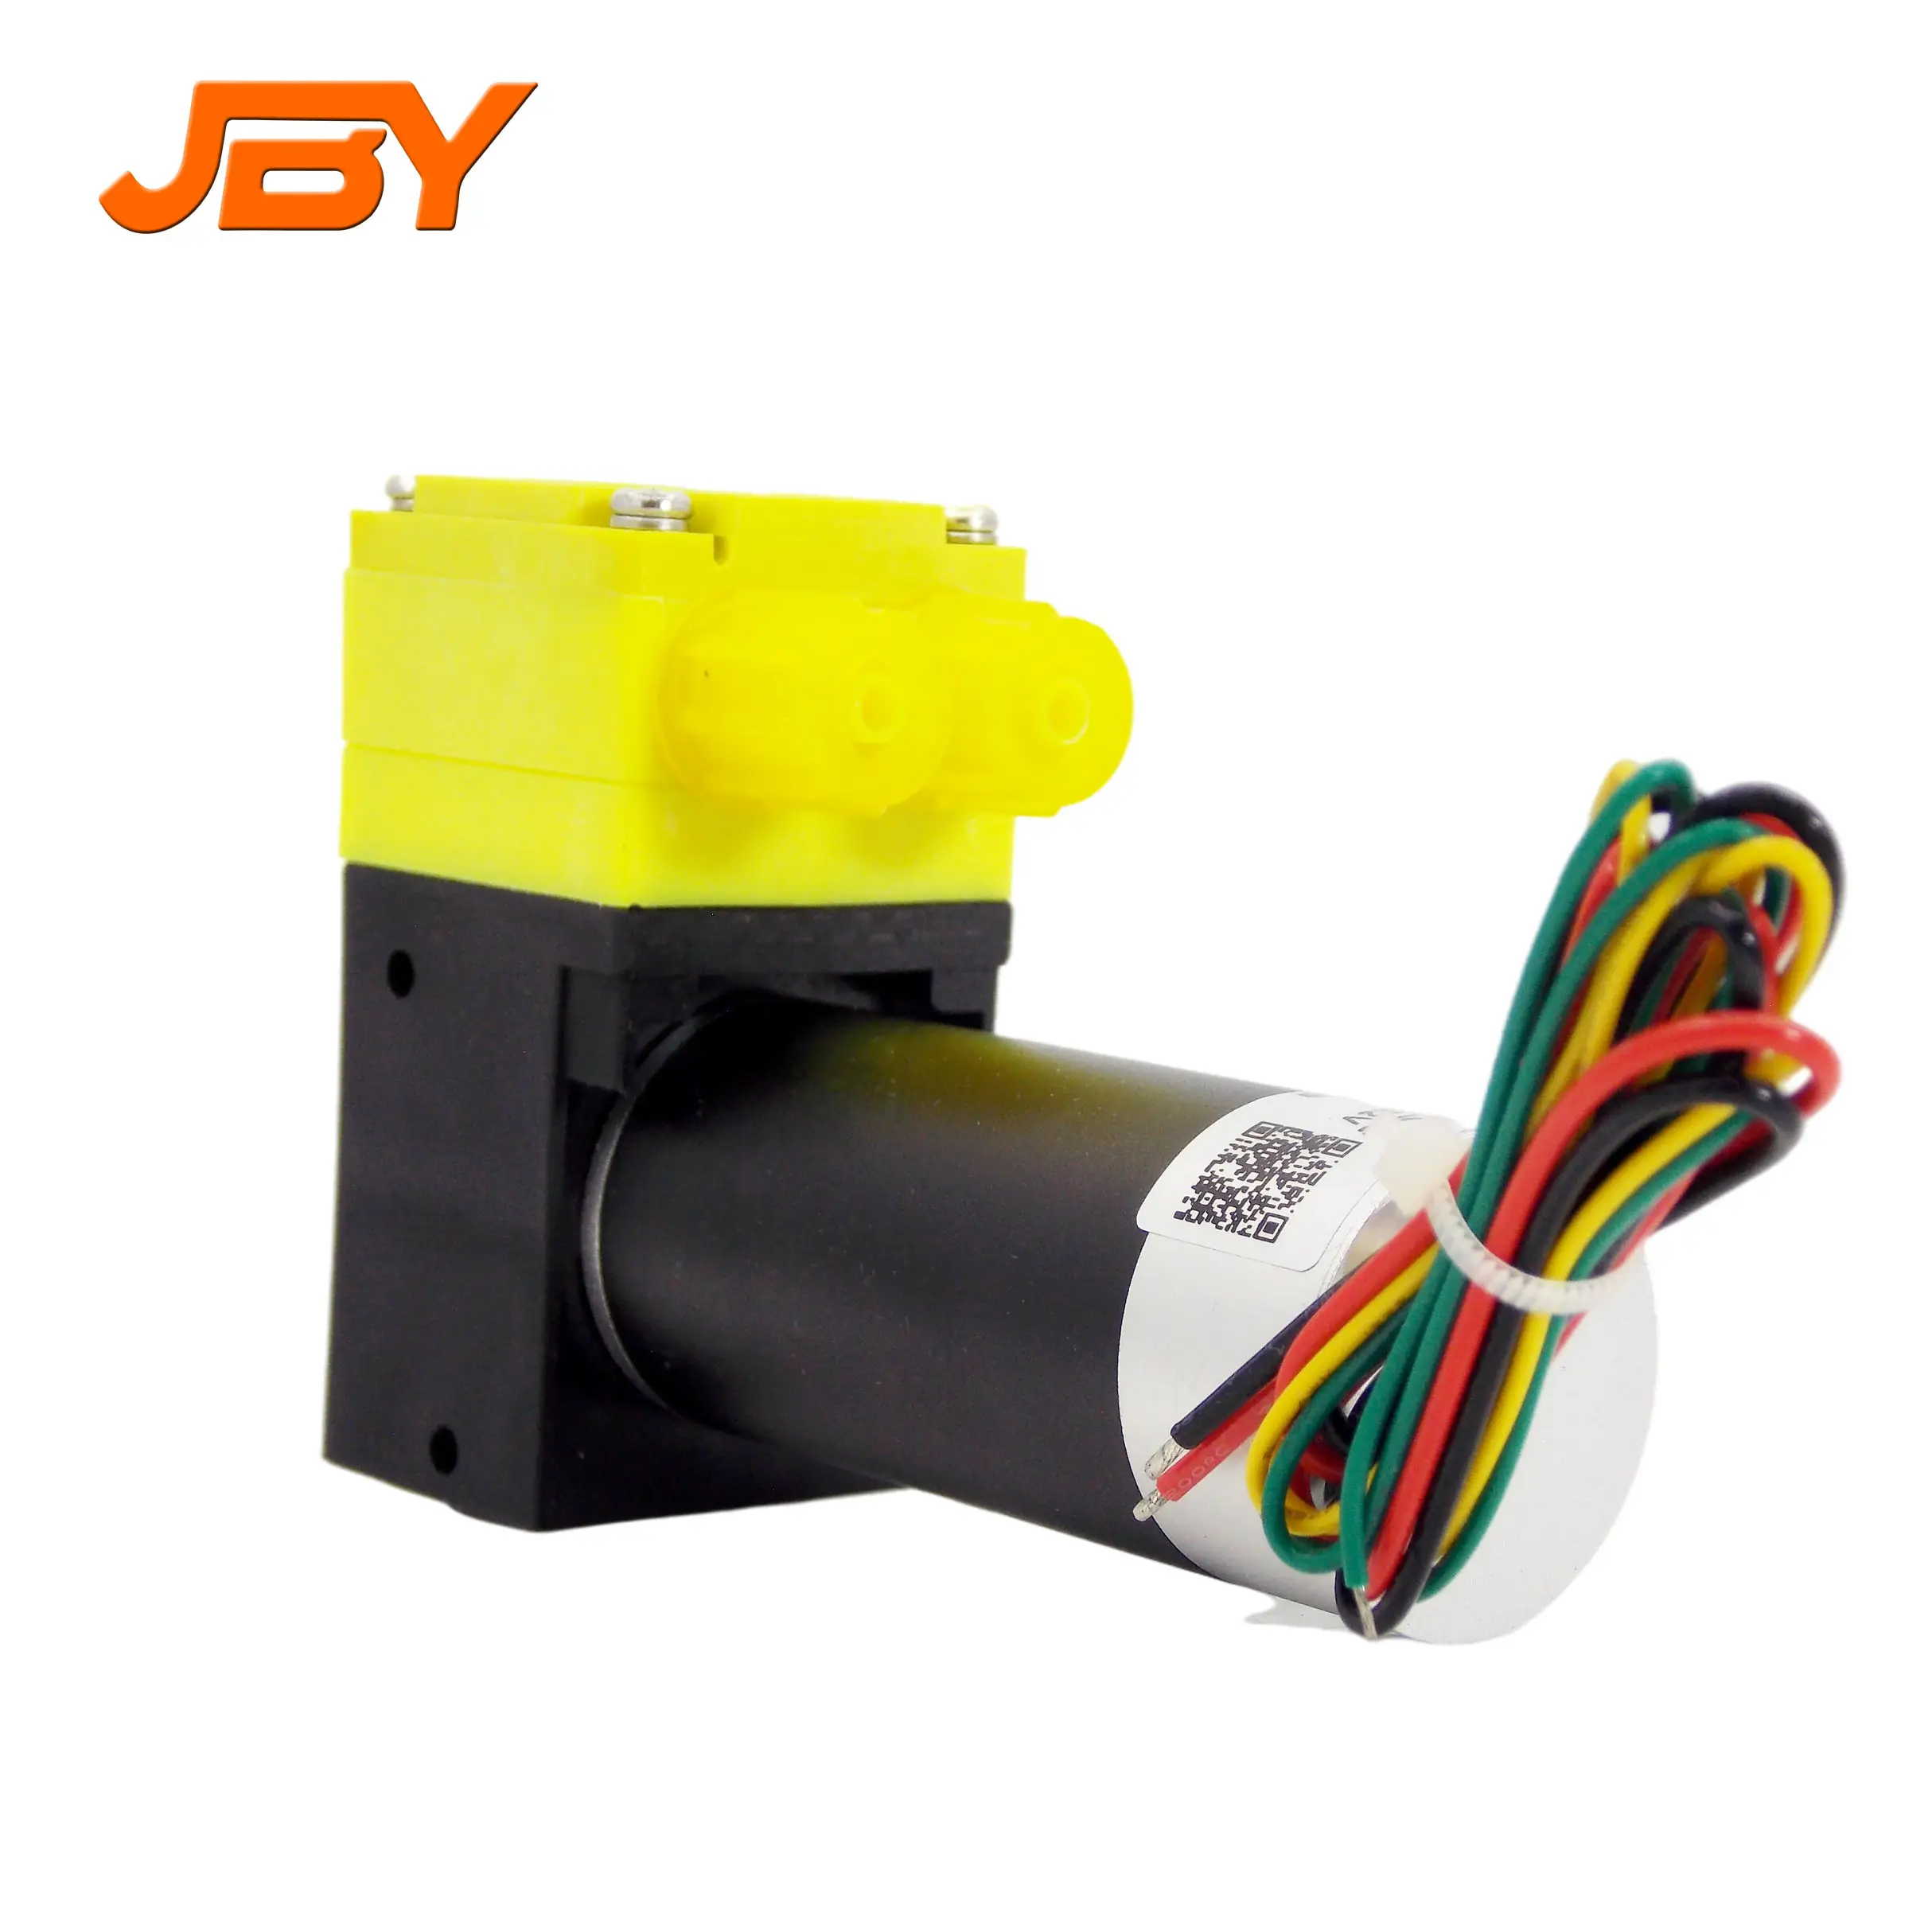 JBY-BP1000C 12V/24V DC Micro dung môi chuyển bơm với động cơ DC sử dụng cho chất lỏng lấy mẫu chuyển làm đầy